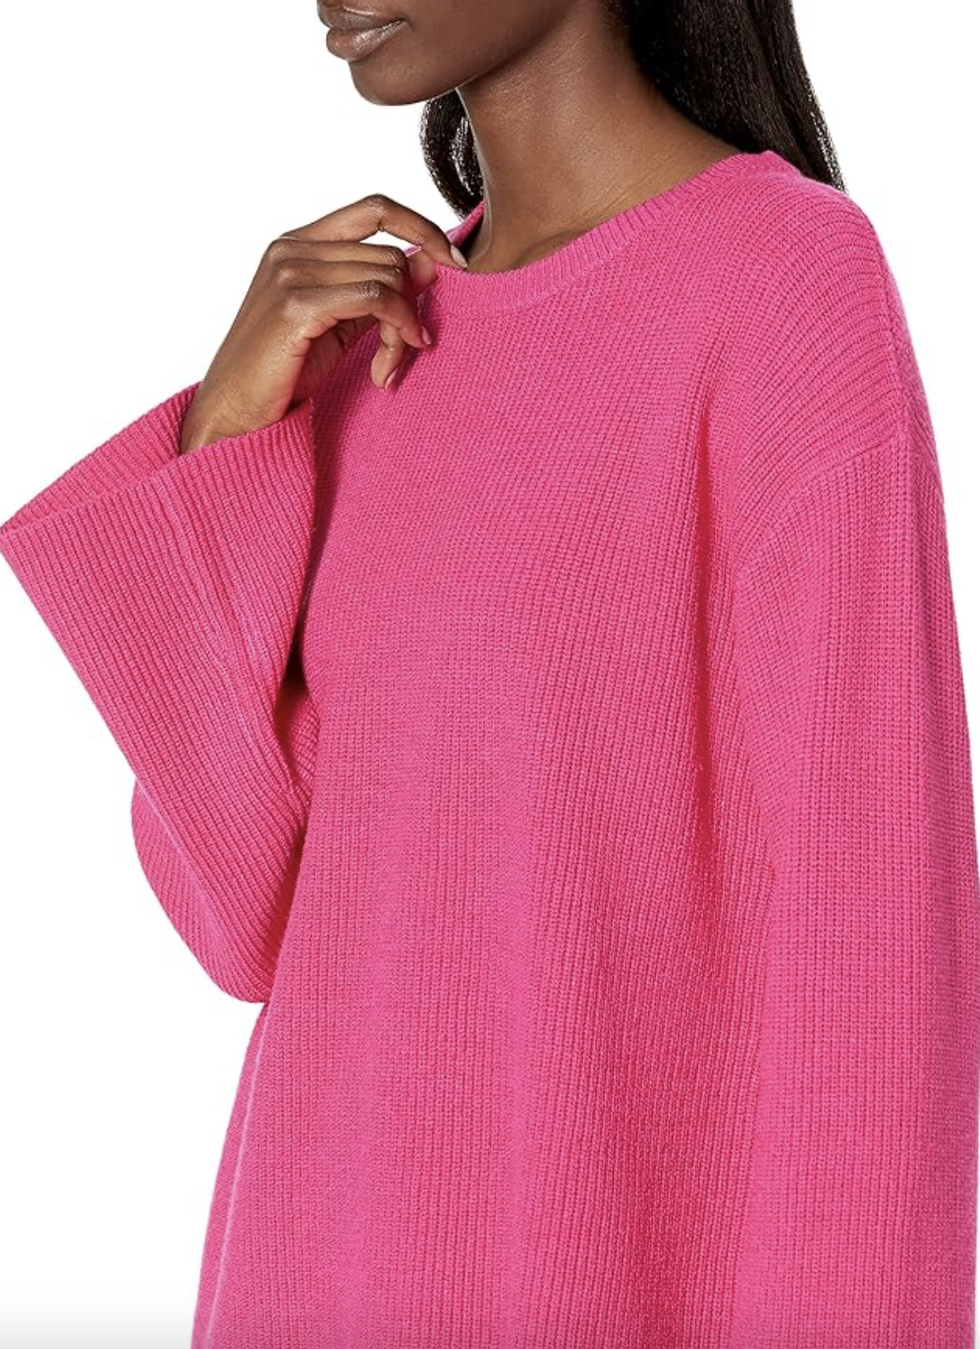 Siete Moda Mujer - Buenos días!!! REBAJAS!!!!! El color de este jersey nos  tiene😍!!! #jerseys #colors #rosa #pink #borlas #frio❄ #invierno❄ #2020  #beautiful #life #happy #blogger #love #total_spain #siete98 #❤️❤️❤️❤️